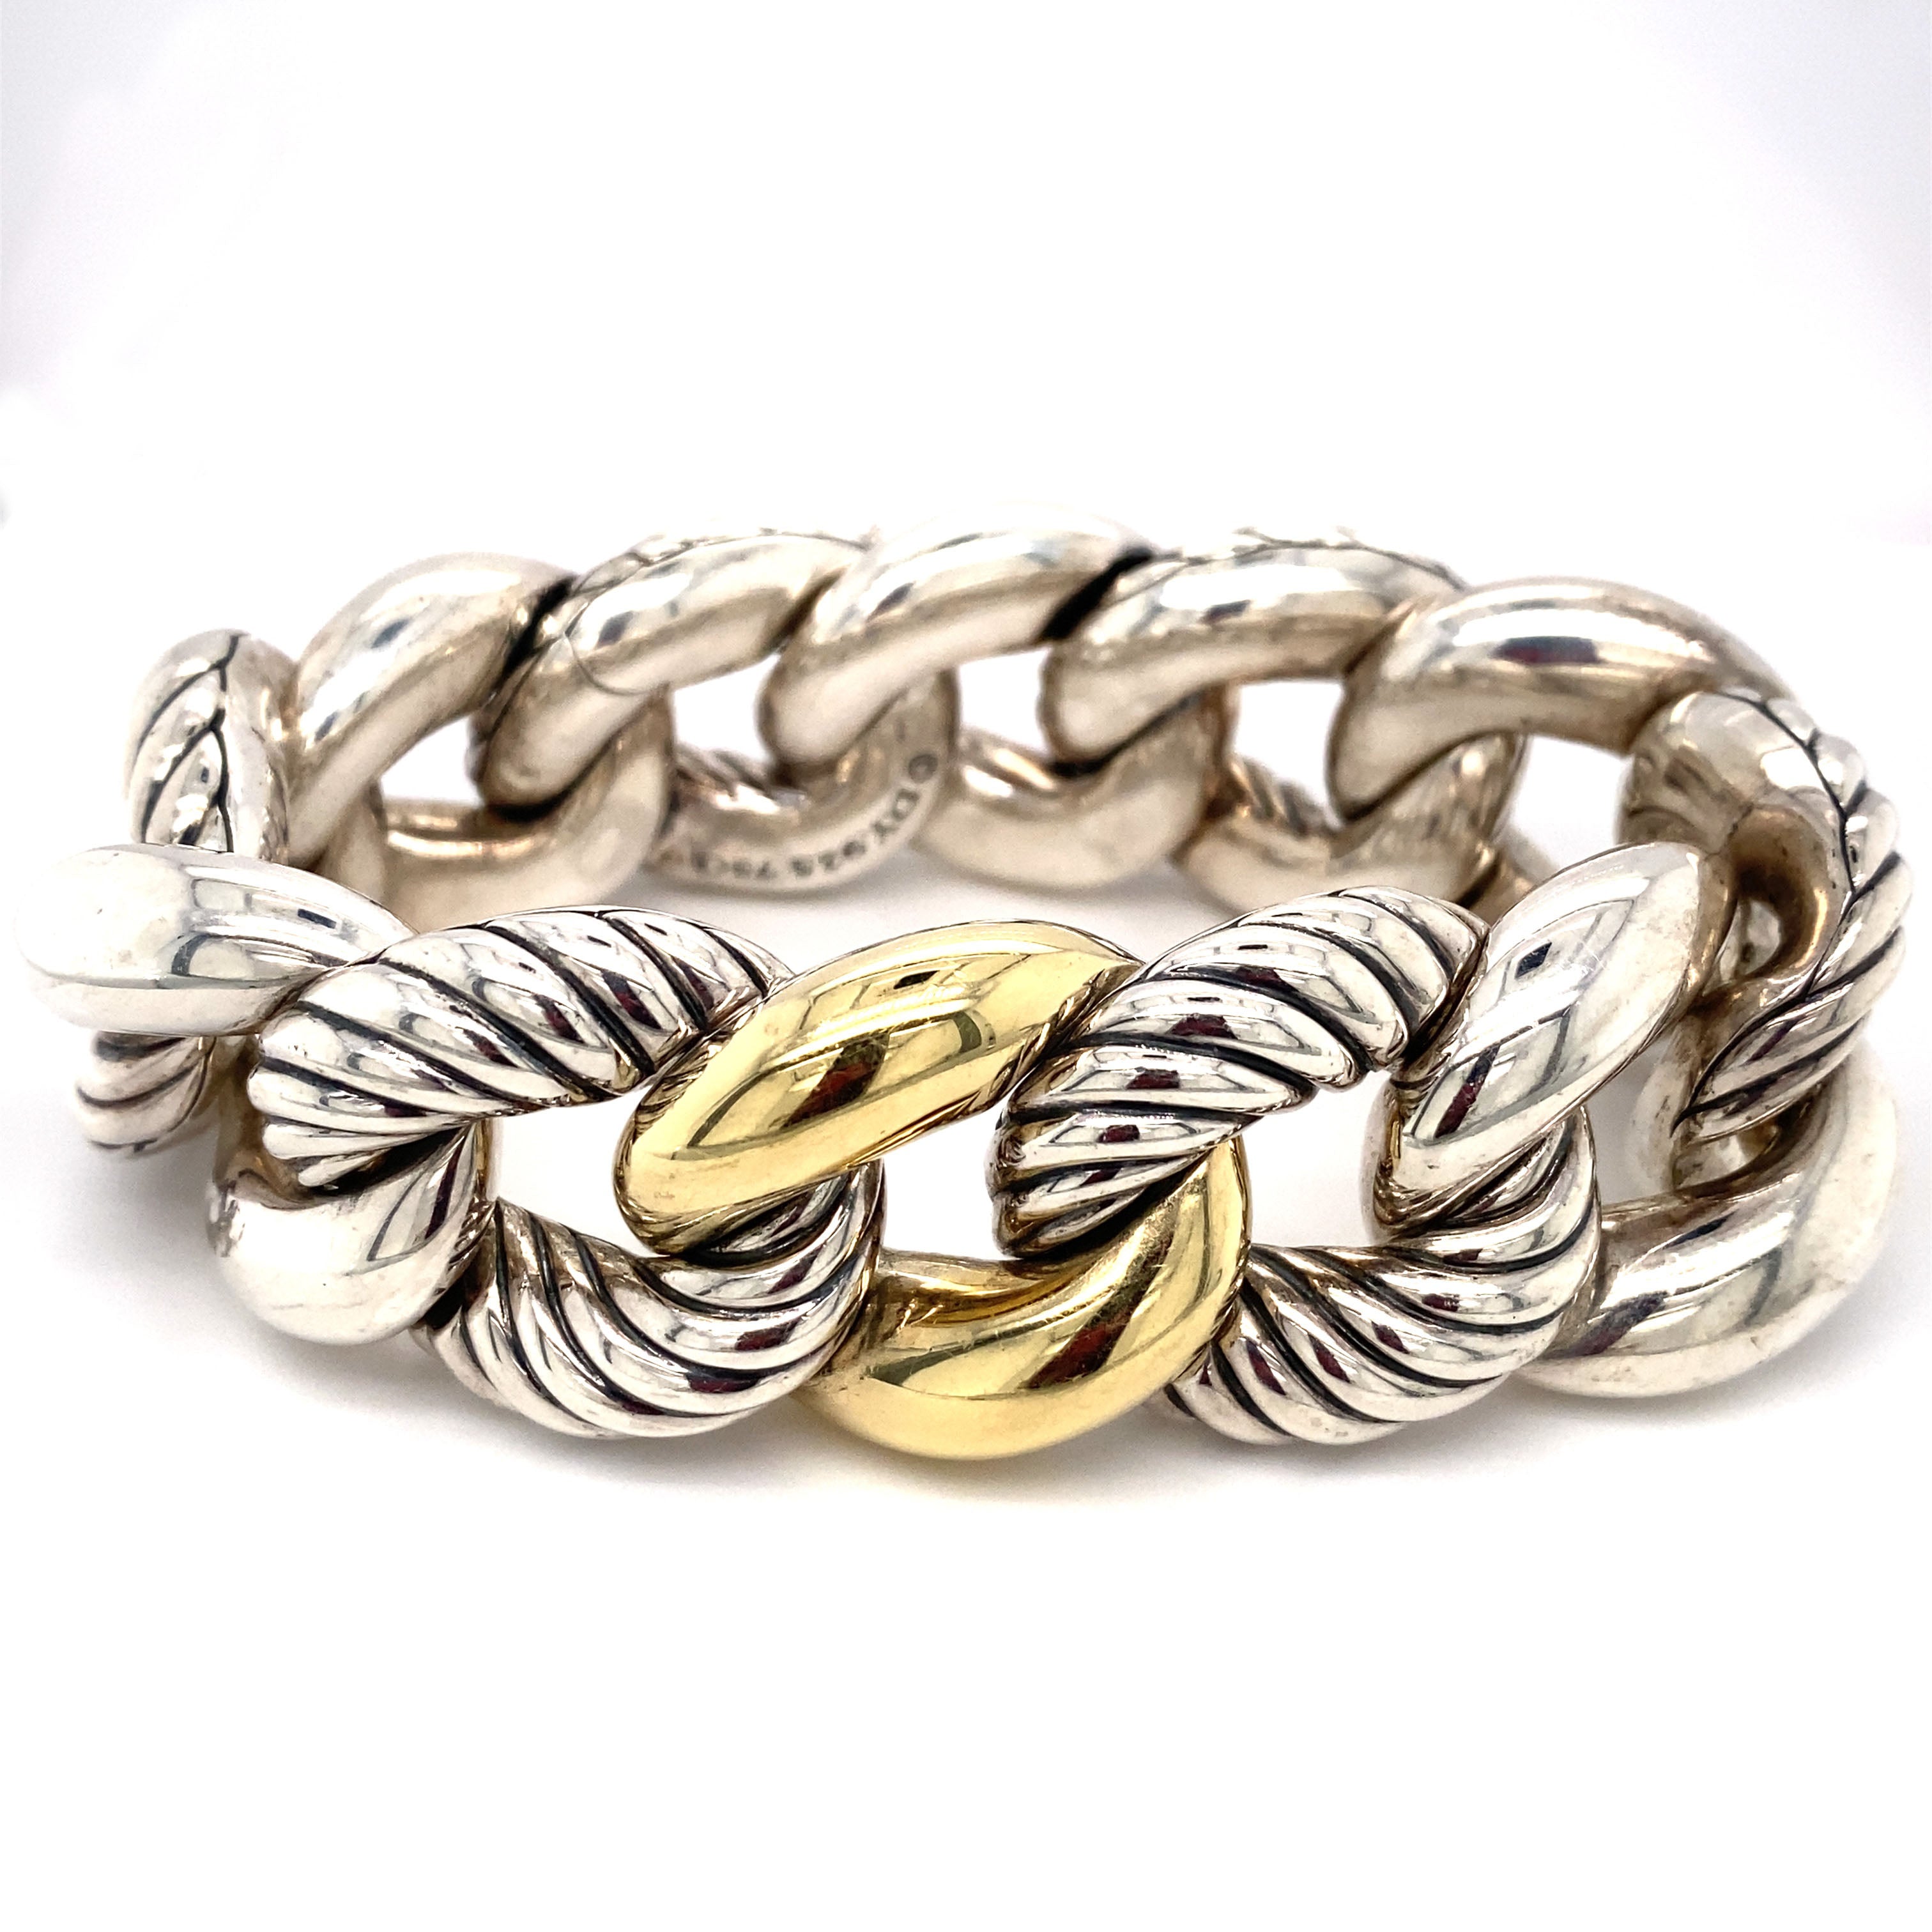 Bracelet, 18 carat gold or sterling silver